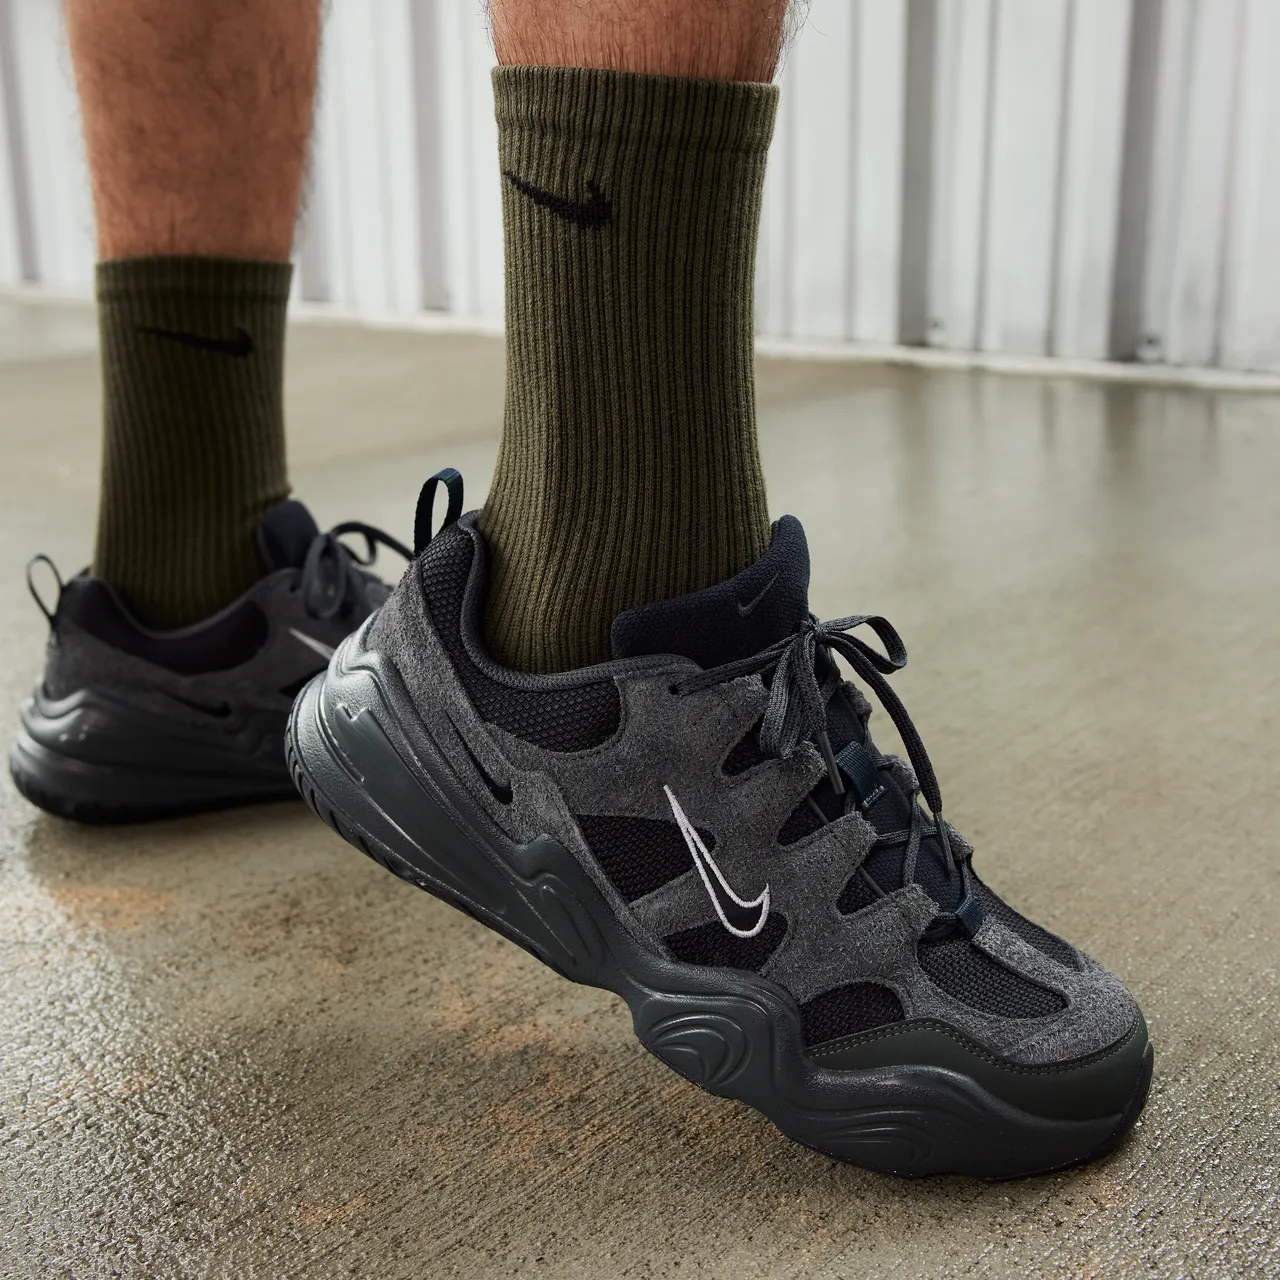 Nike Tech Hera Men's Shoes - Grey